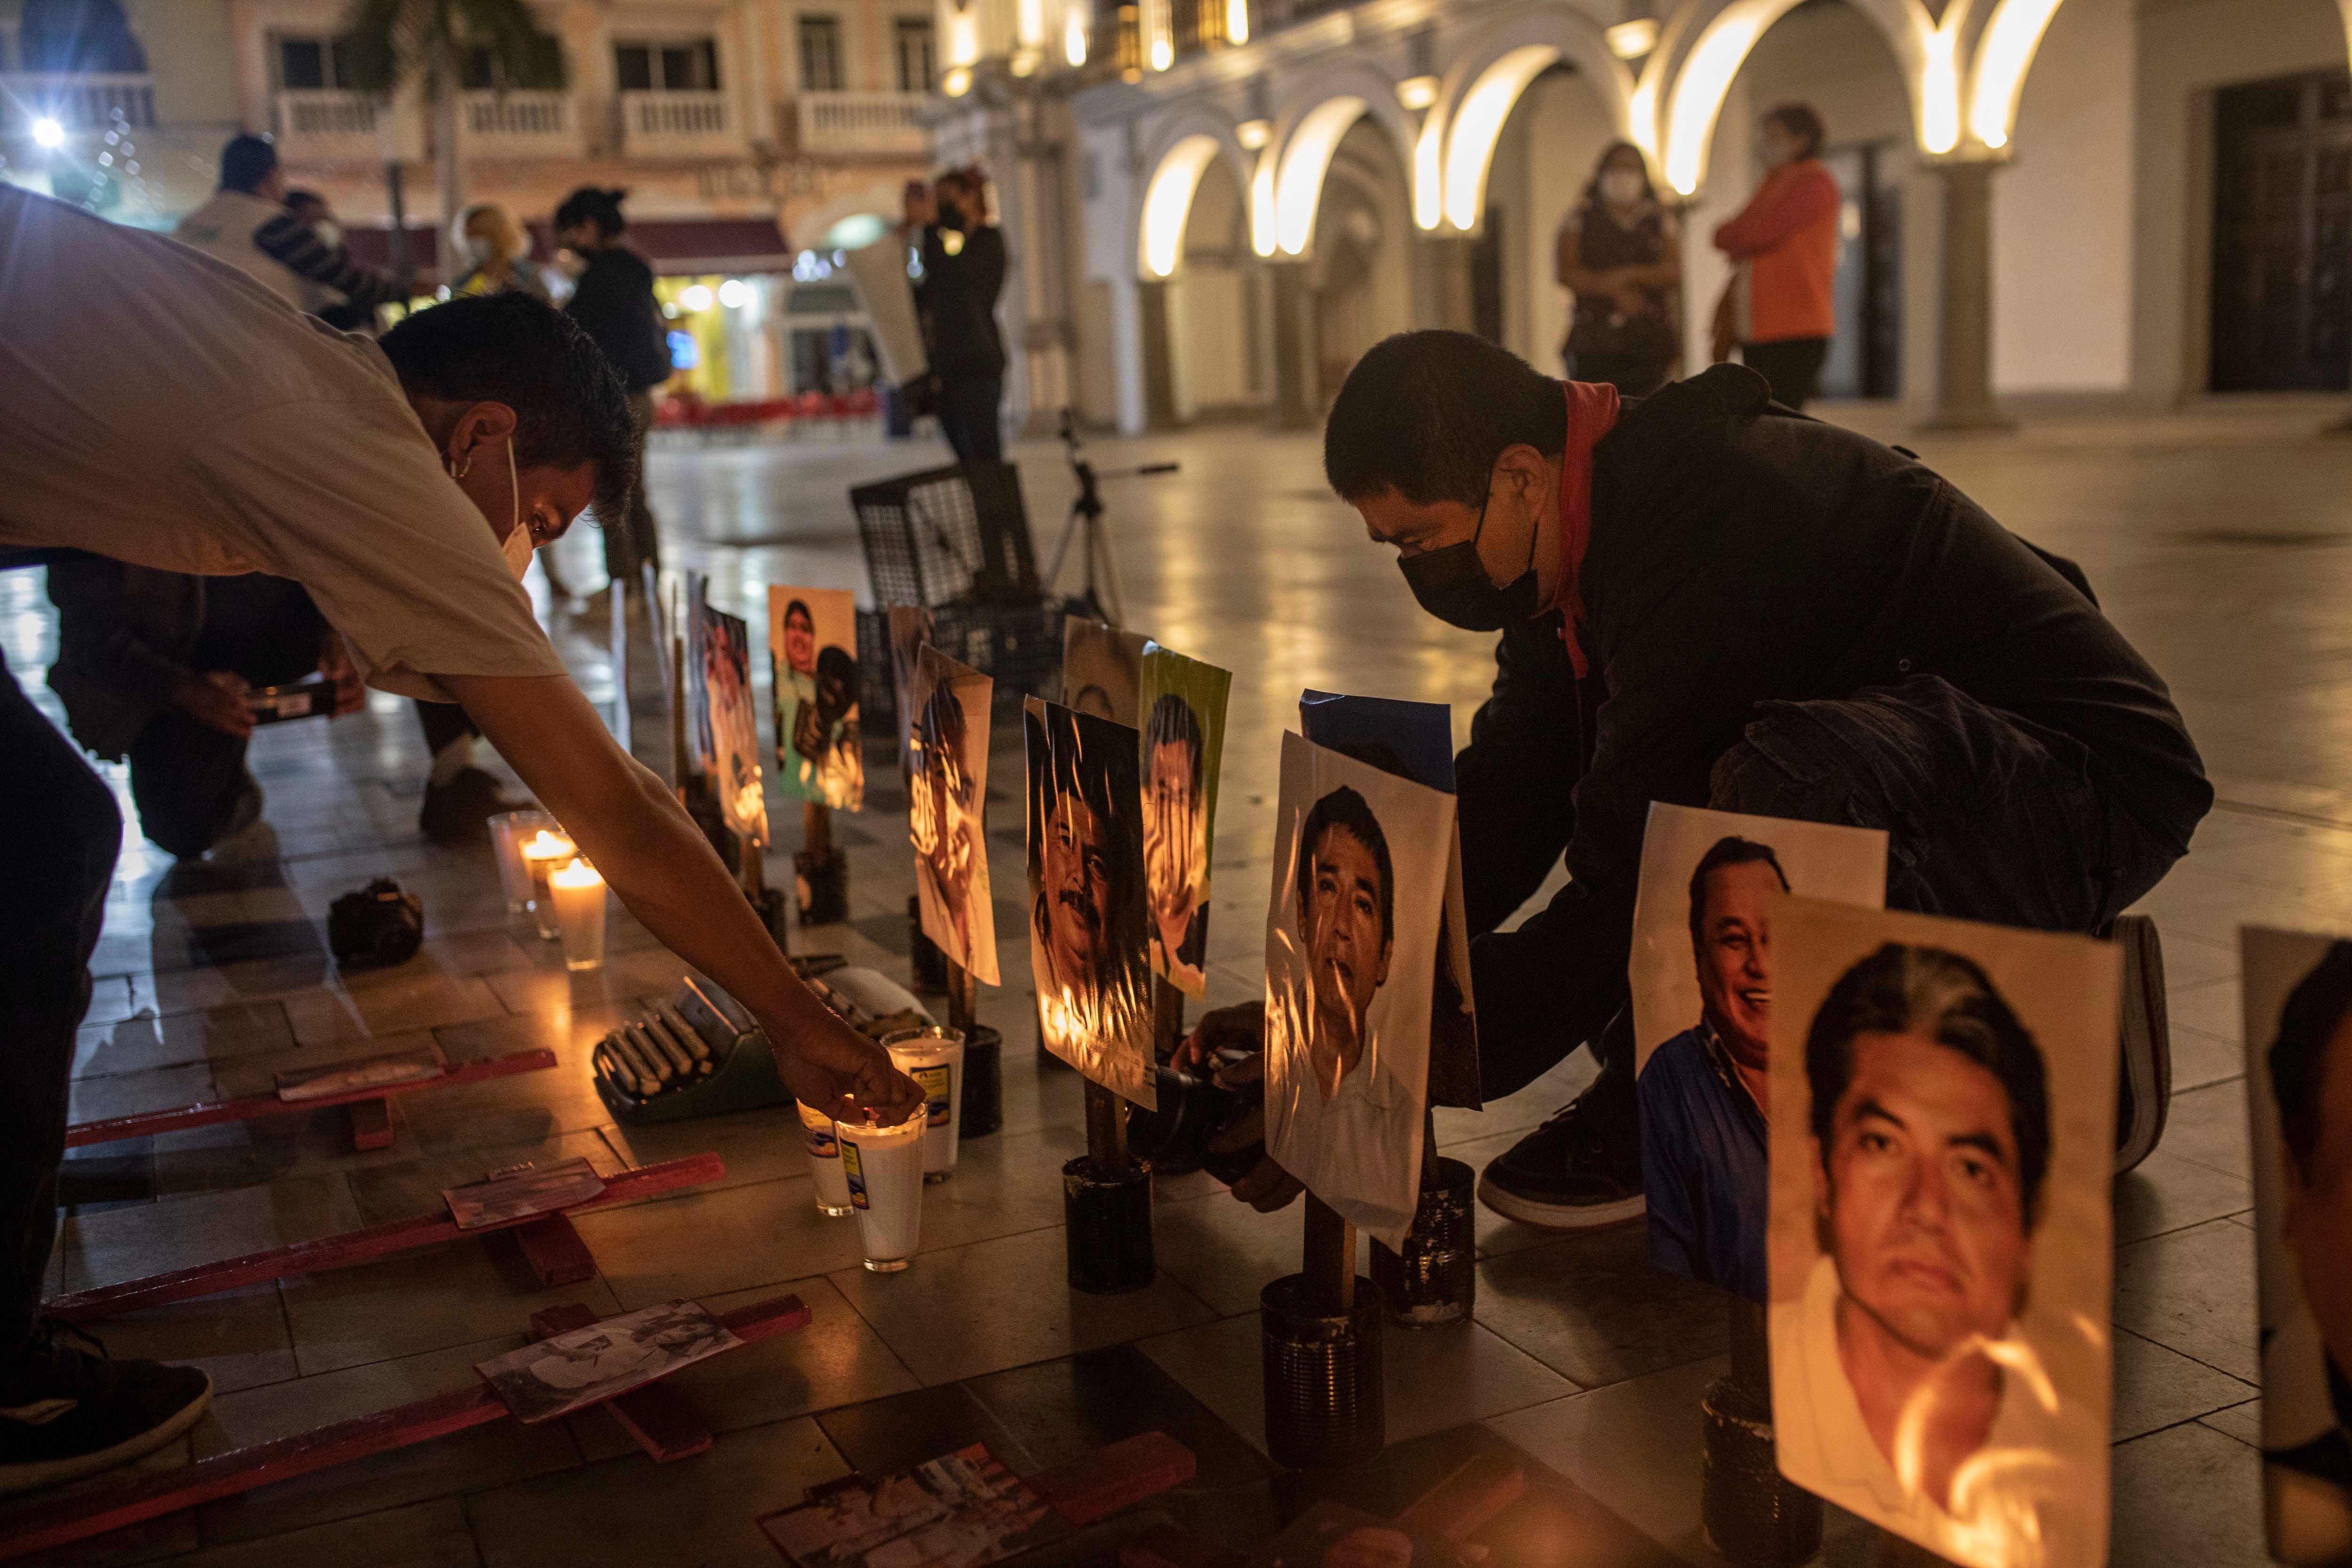 Des journalistes mexicains commémoraient des collègues tués, lors d'un rassemblement sur la place Zócalo à Veracruz, le 25 janvier 2022. Ils ont aussi renoué les appels à de plus fortes actions pour mettre fin aux violences dont sont victimes les journalistes dans ce pays.